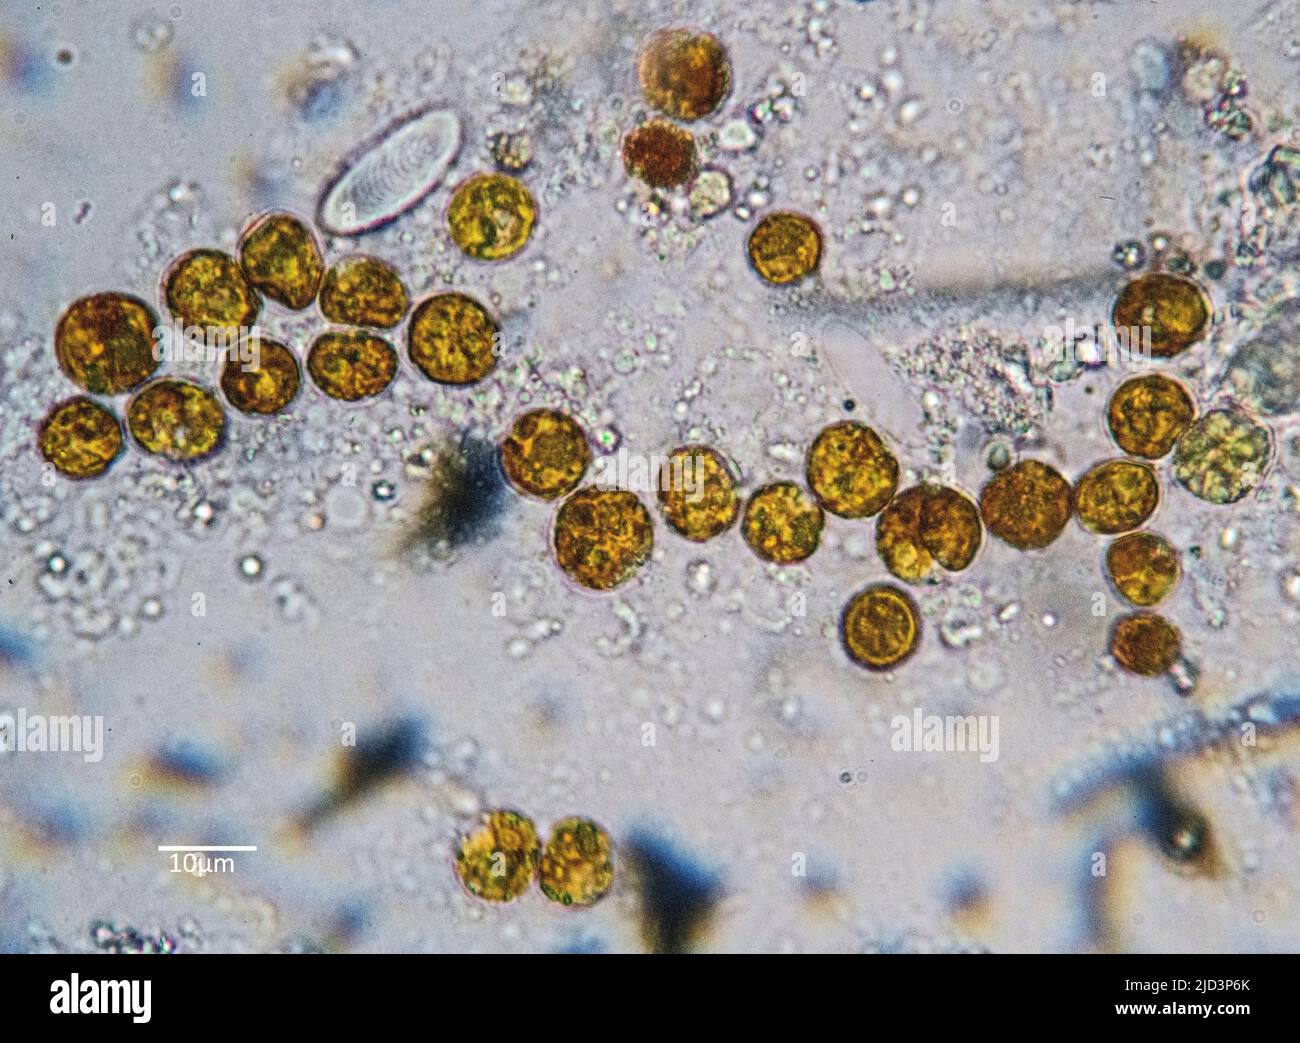 Algues symbiotiques (zooxanthellae) d'un zoanthide (Zoanthidea) de l'Indo-Pacifique. Les cellules individuelles ont en moyenne environ 9 µm de diamètre. Banque D'Images